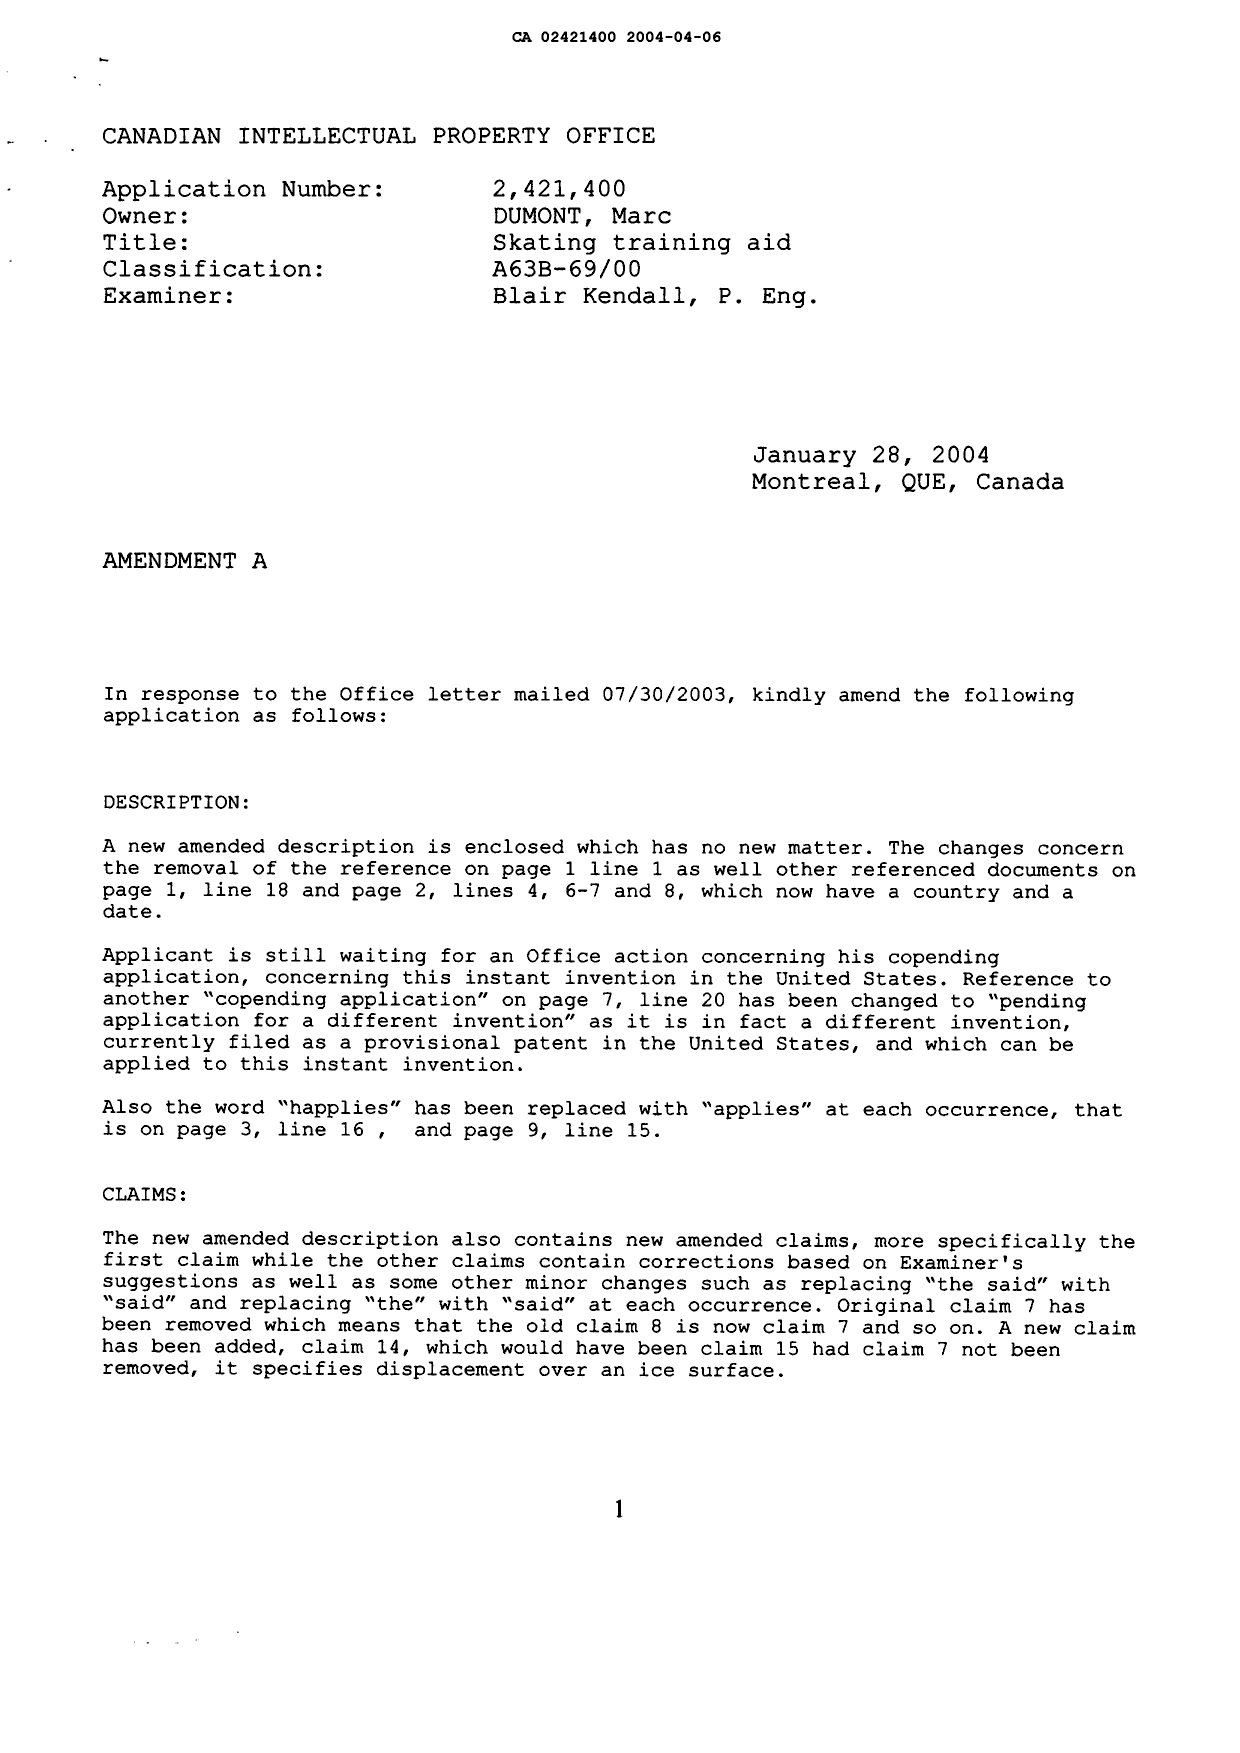 Document de brevet canadien 2421400. Poursuite-Amendment 20031206. Image 3 de 17